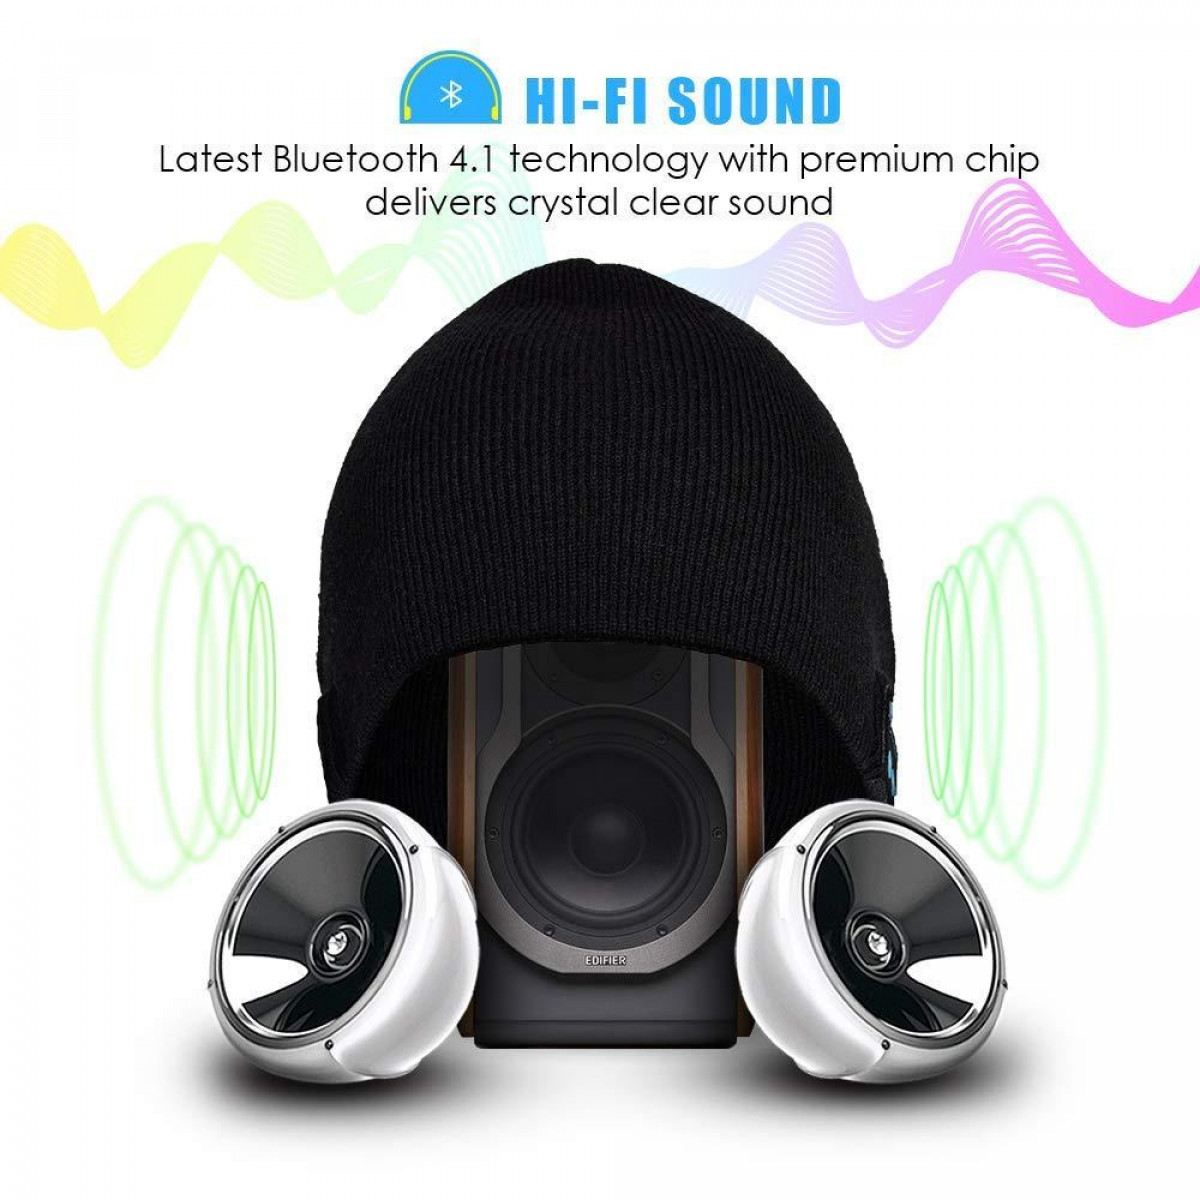 INF Kopfhörermütze - mit und Mikrofon schwarz, Kopfhörer schwarz Kopfhörern Over-ear Bluetooth Mütze 